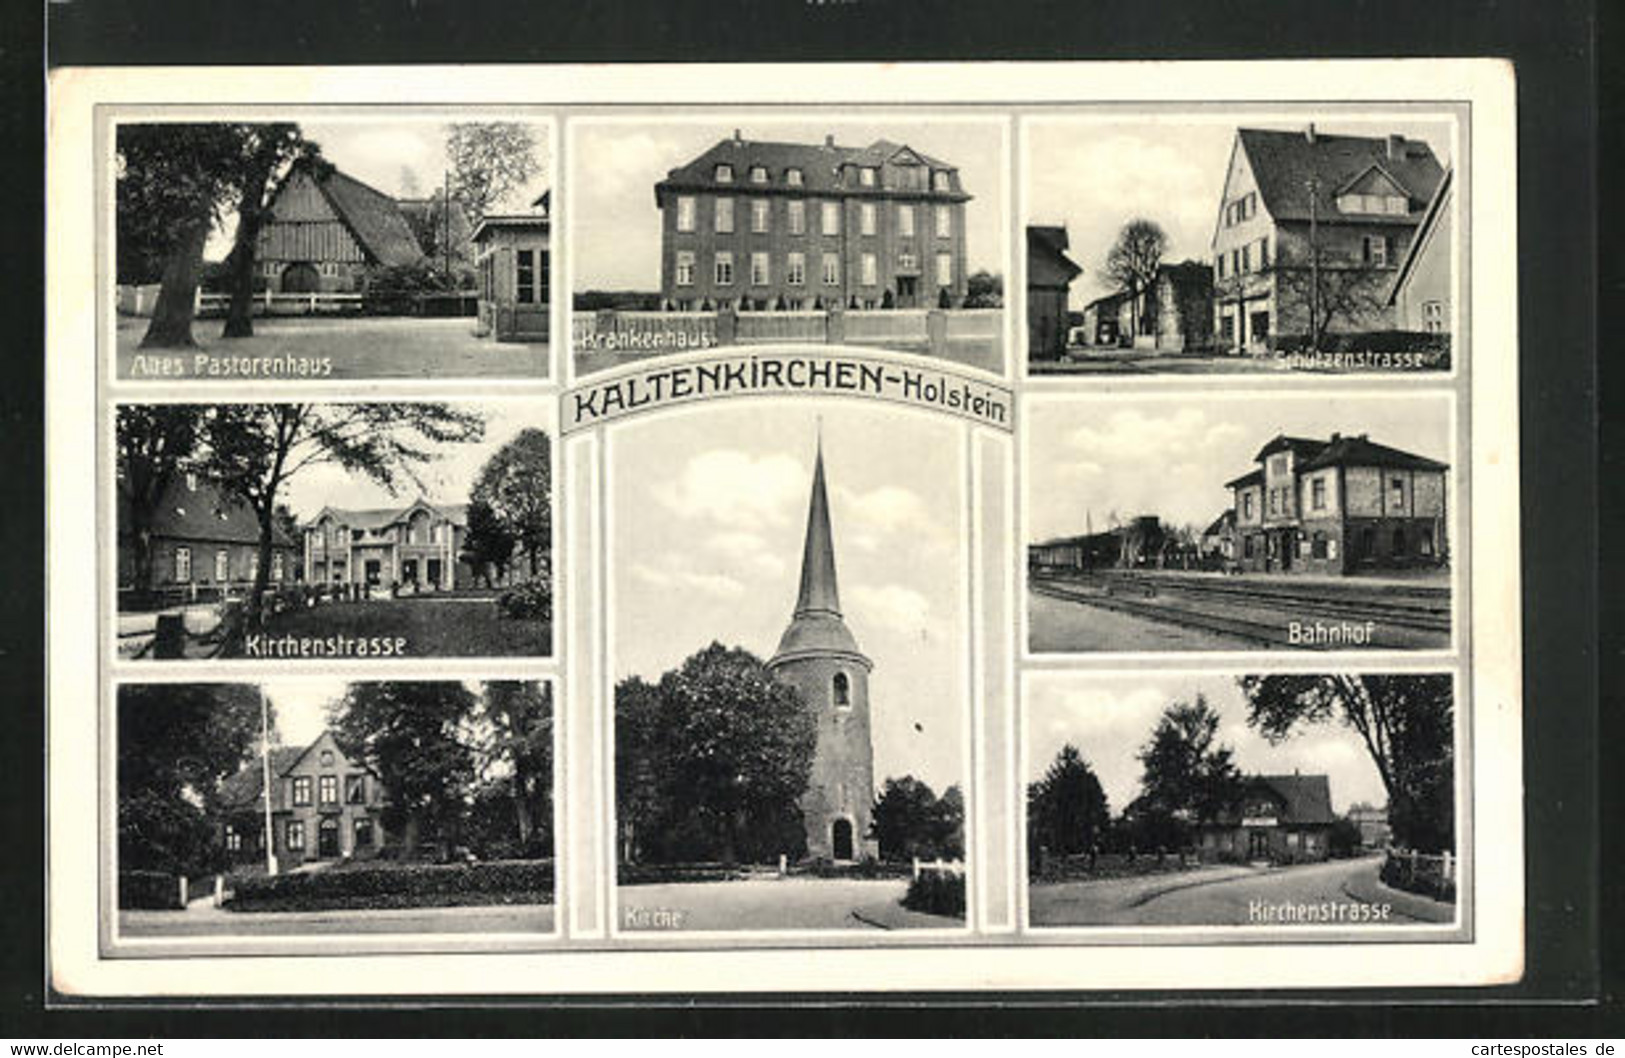 AK Kaltenkirchen / Holstein, Bahnhof, Schützenstrasse, Kirchenstrasse, Altes Pastorenhaus - Kaltenkirchen